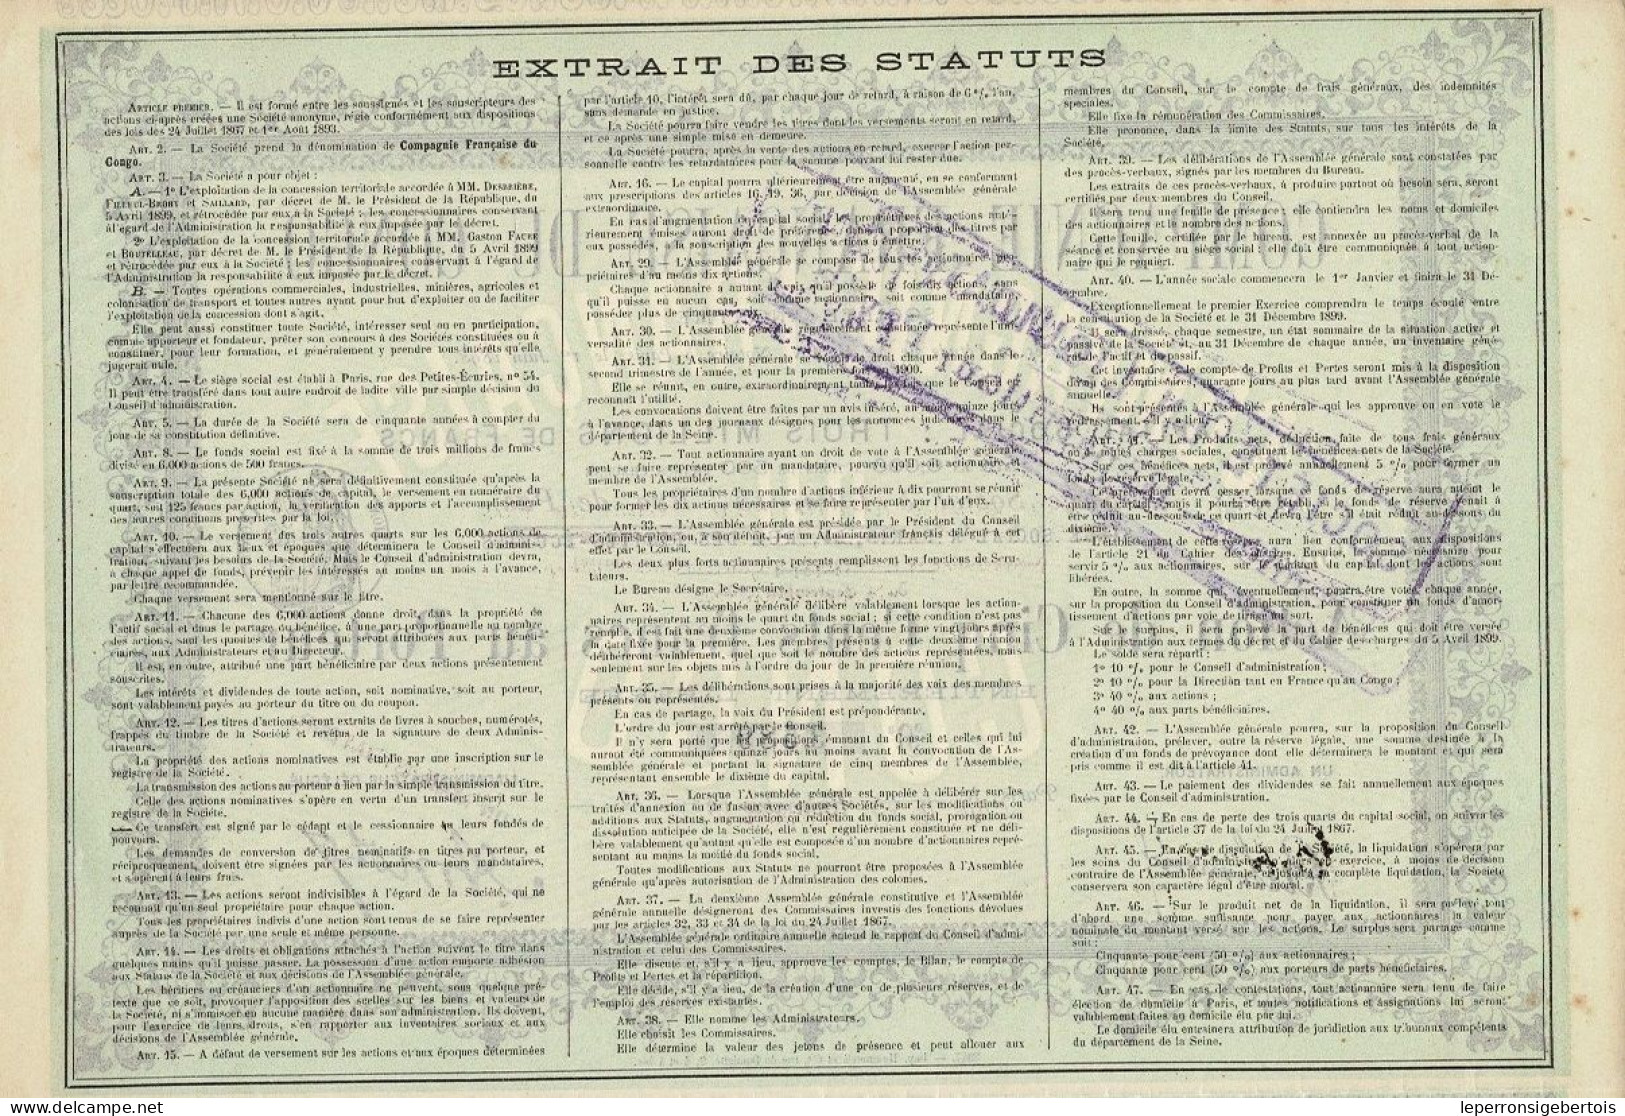 Titre De 1907 - Compagnie Française Du Congo - Afrika